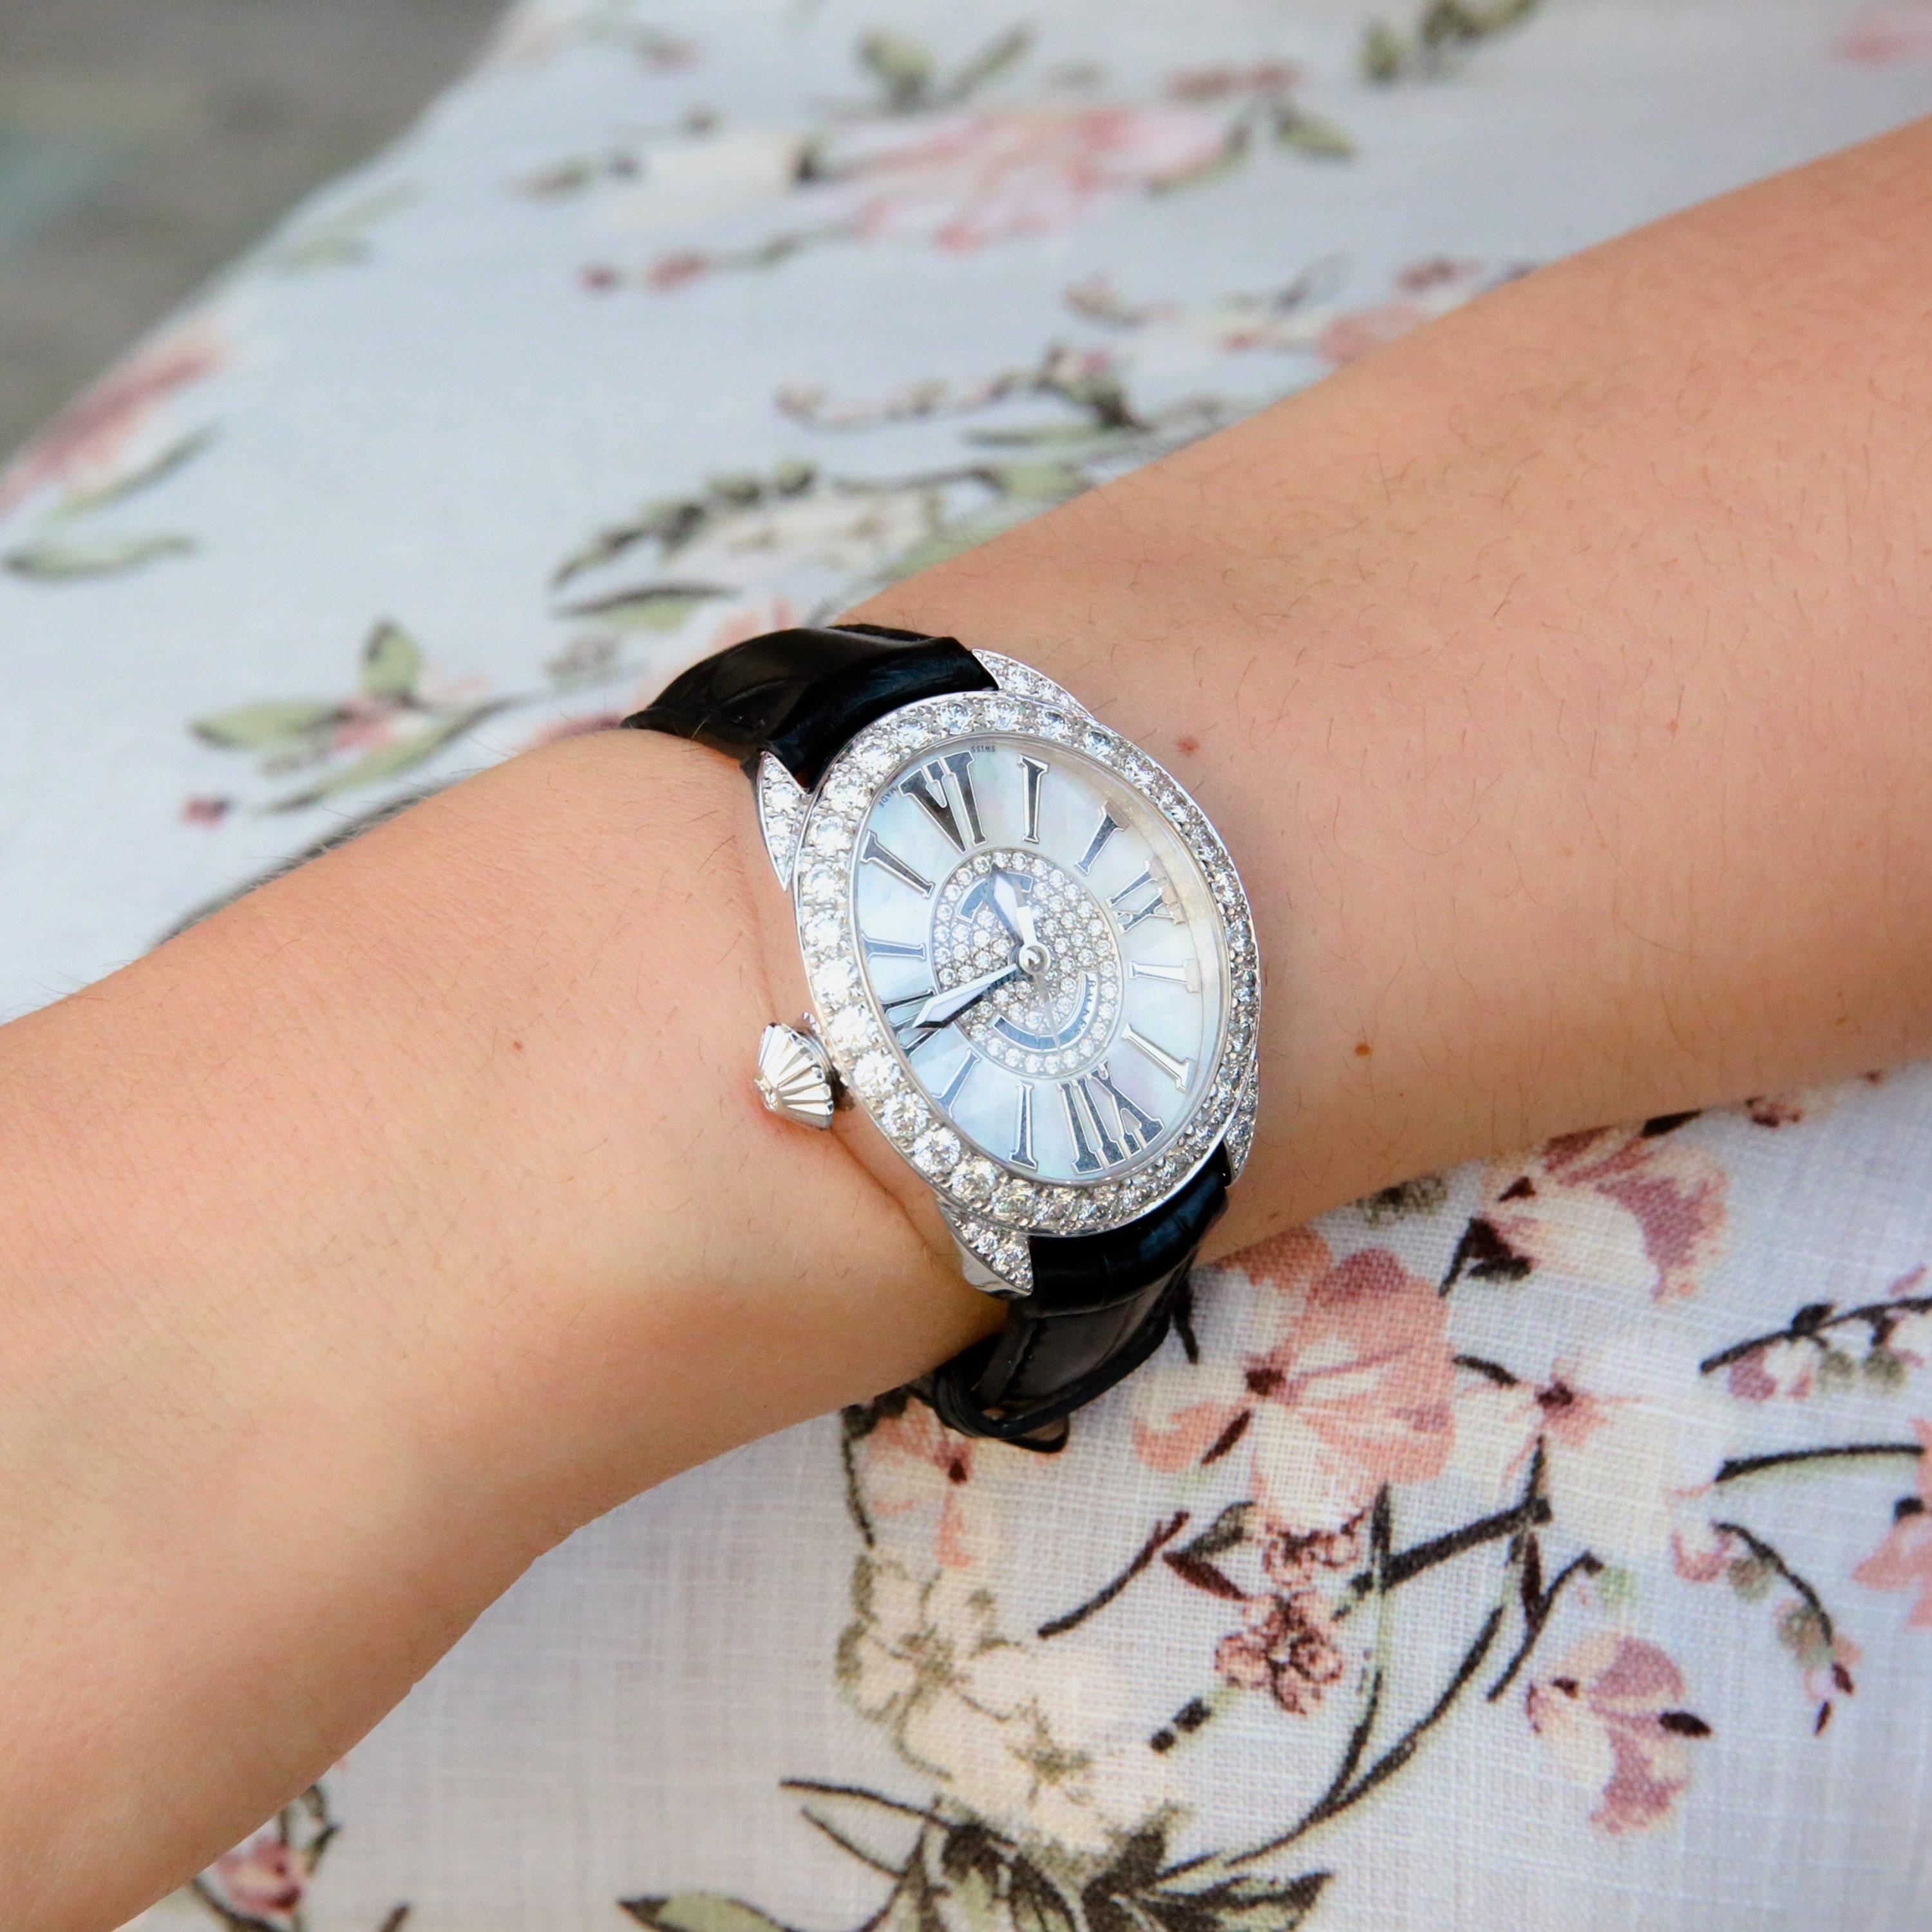 Women's Regent 3238 Luxury Diamond Watch for Women, White Gold